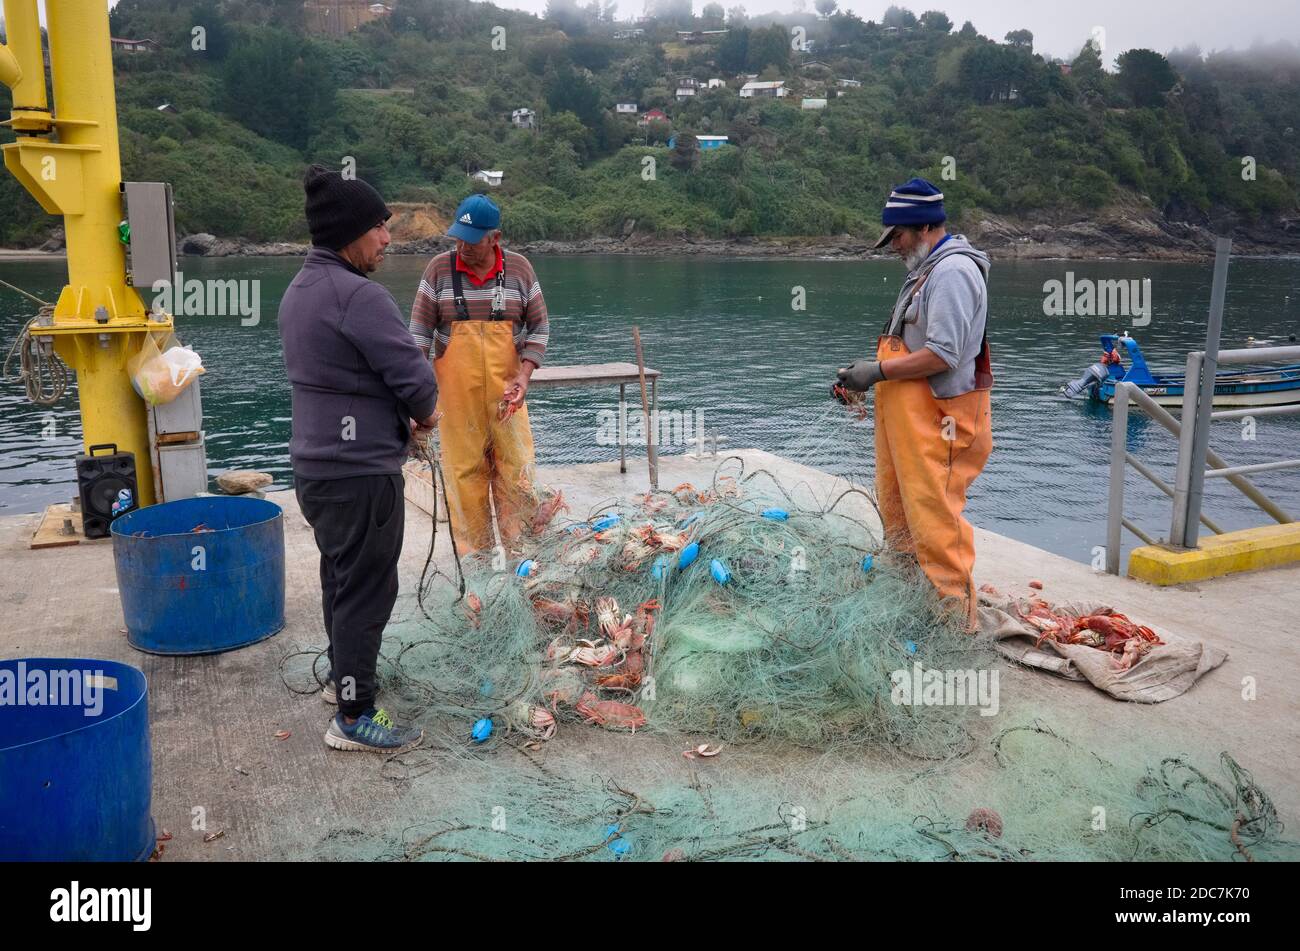 Bahia Mansa, province d'Osorno, Chili - février 2020 : trois pêcheurs obtiennent des crabes du filet de pêche sur la jetée de pêcheurs dans un petit village de pêcheurs Banque D'Images